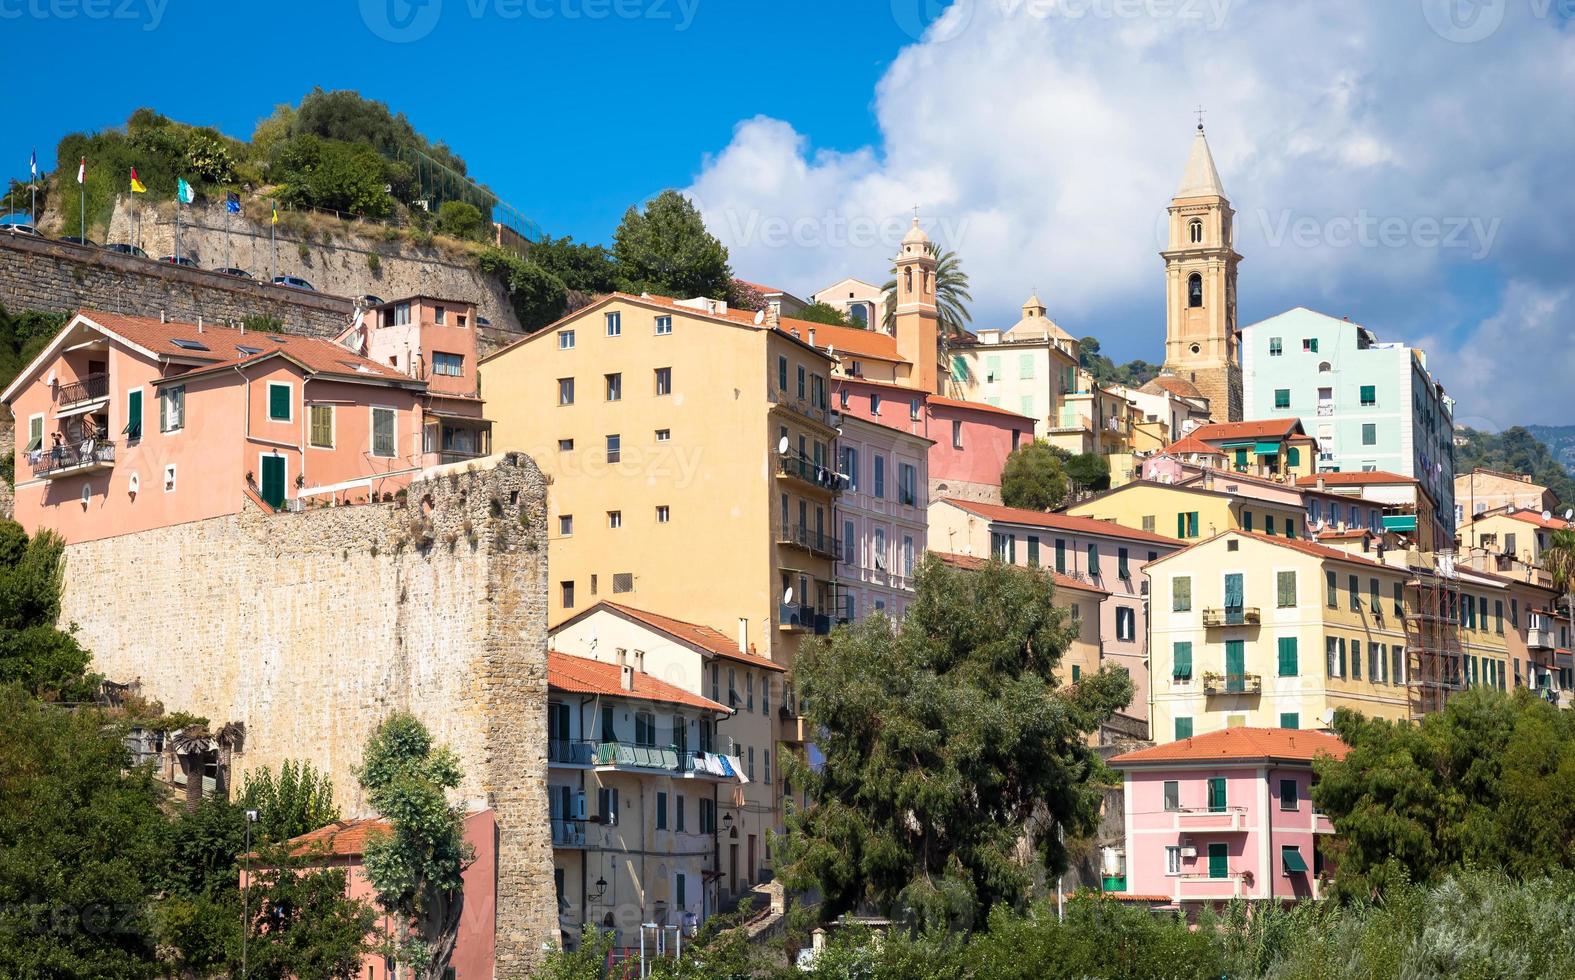 Ventimiglia by i Italien, liguria region, med en blå himmel foto